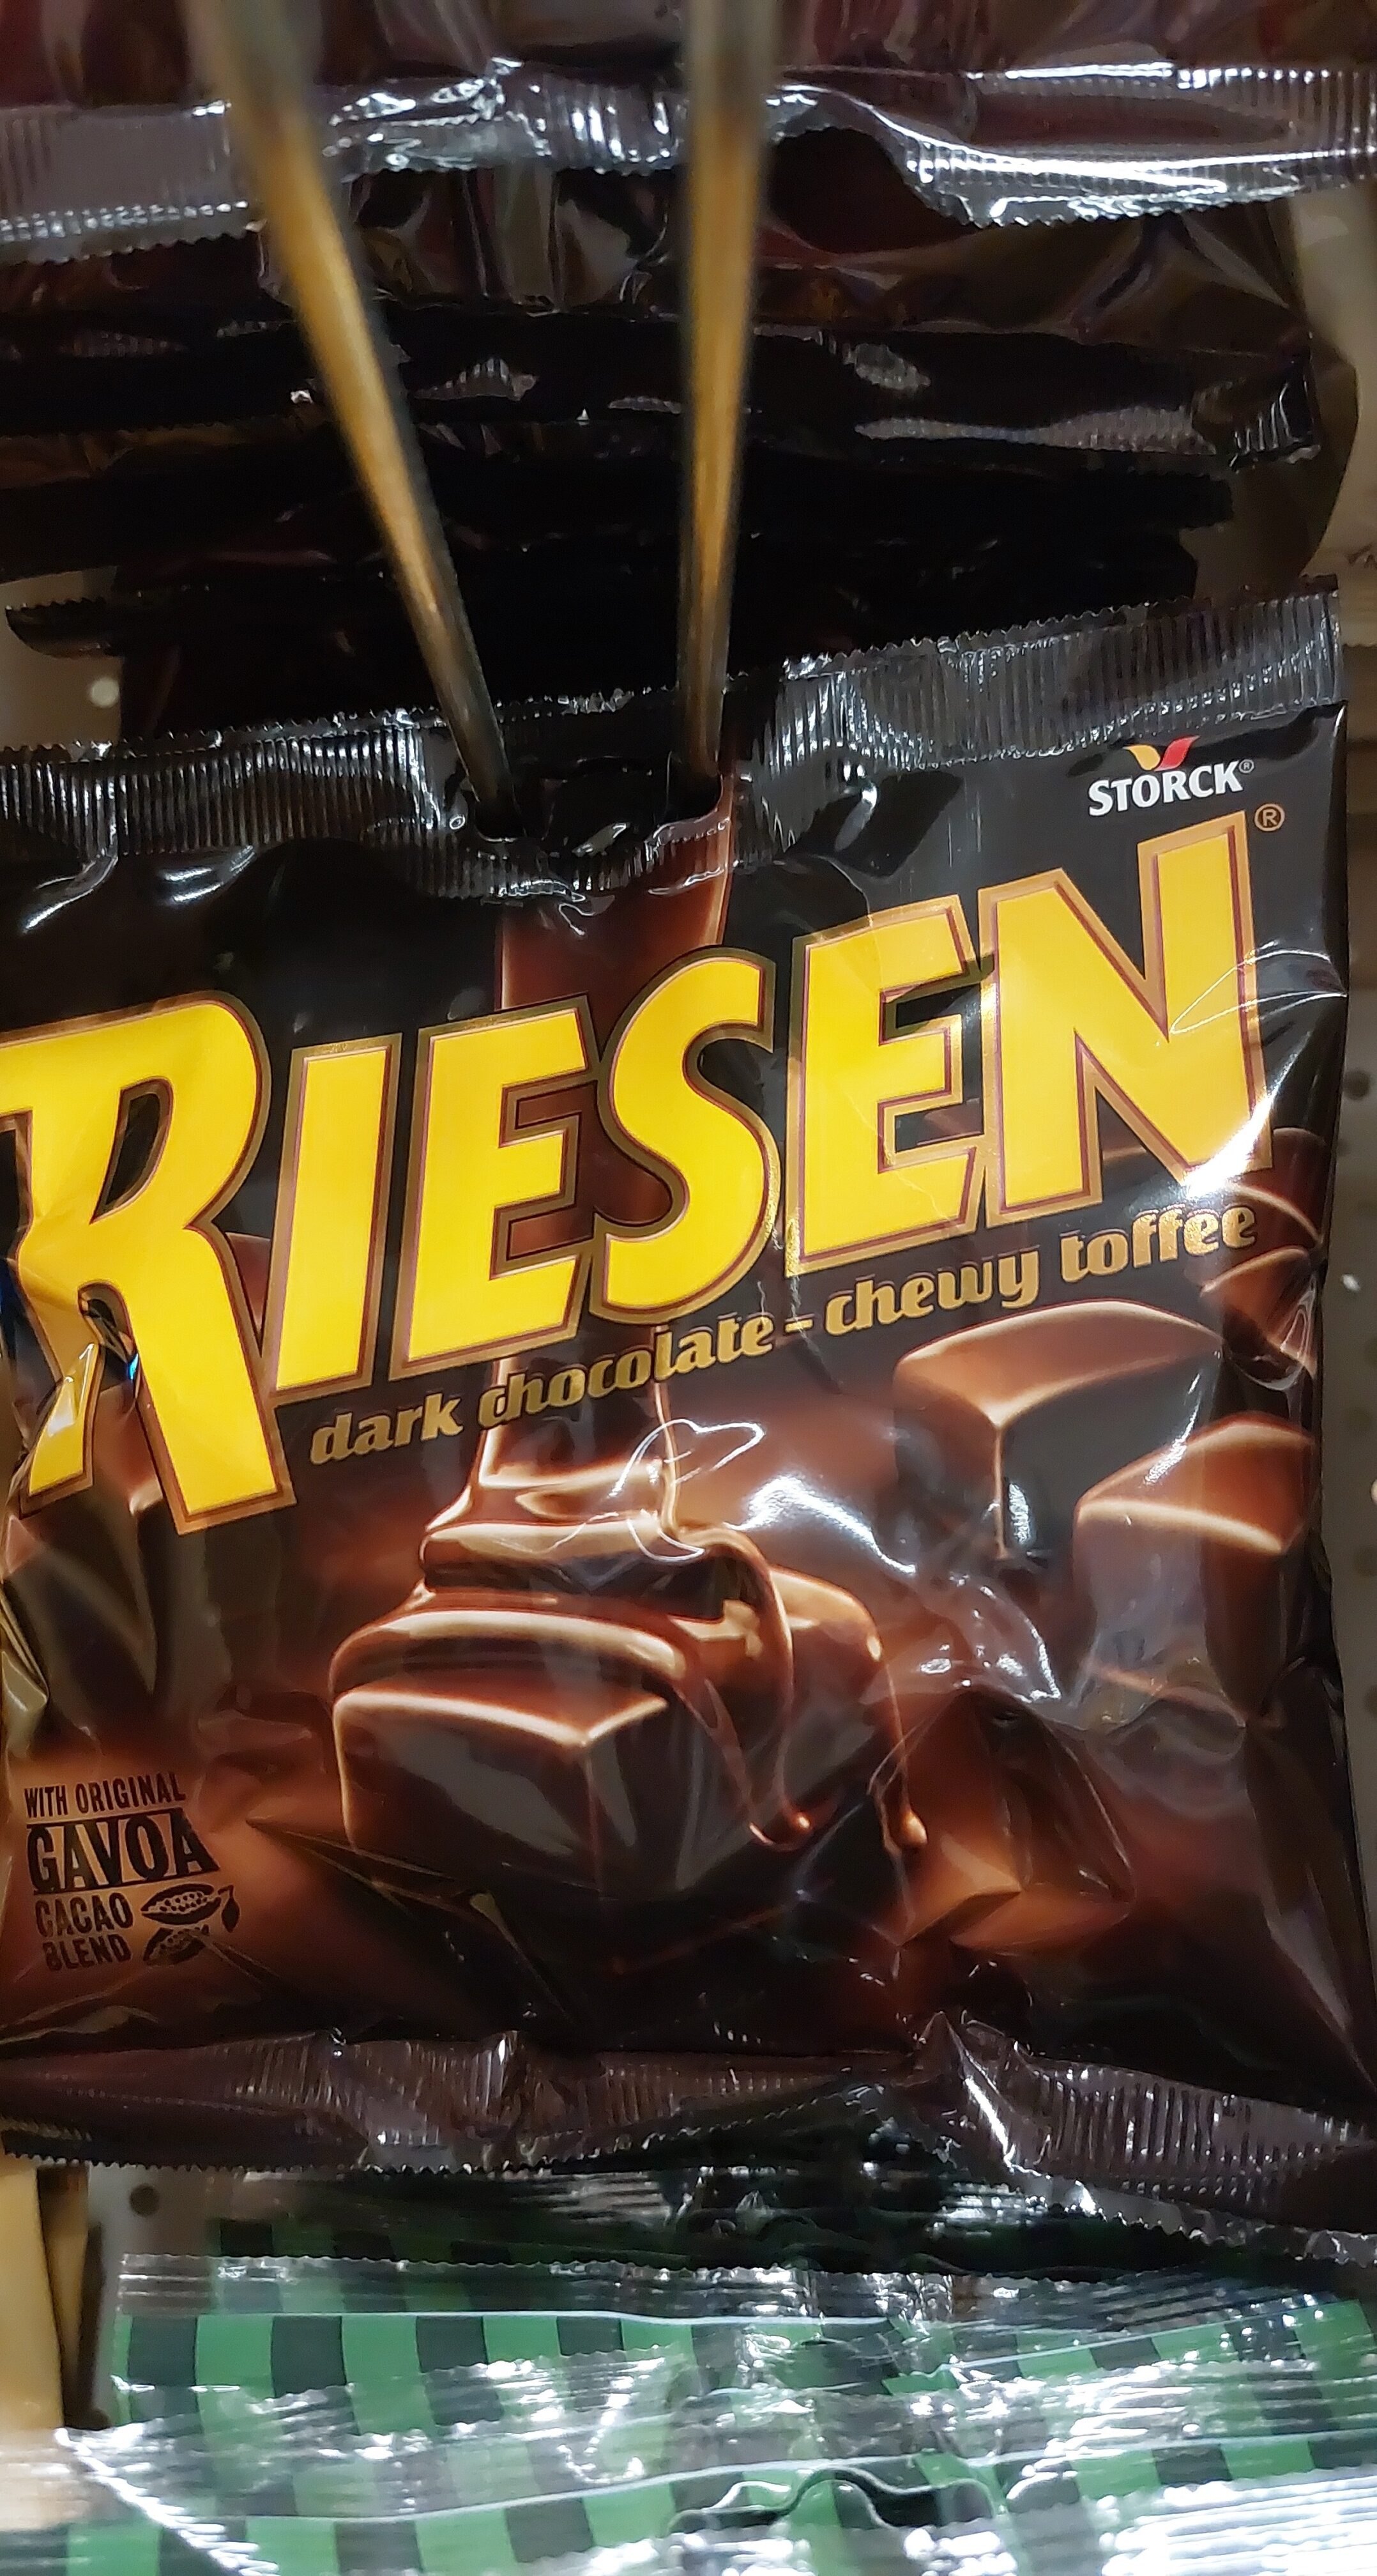 Riesen dark chocolate-chewy toffee - Produkt - en